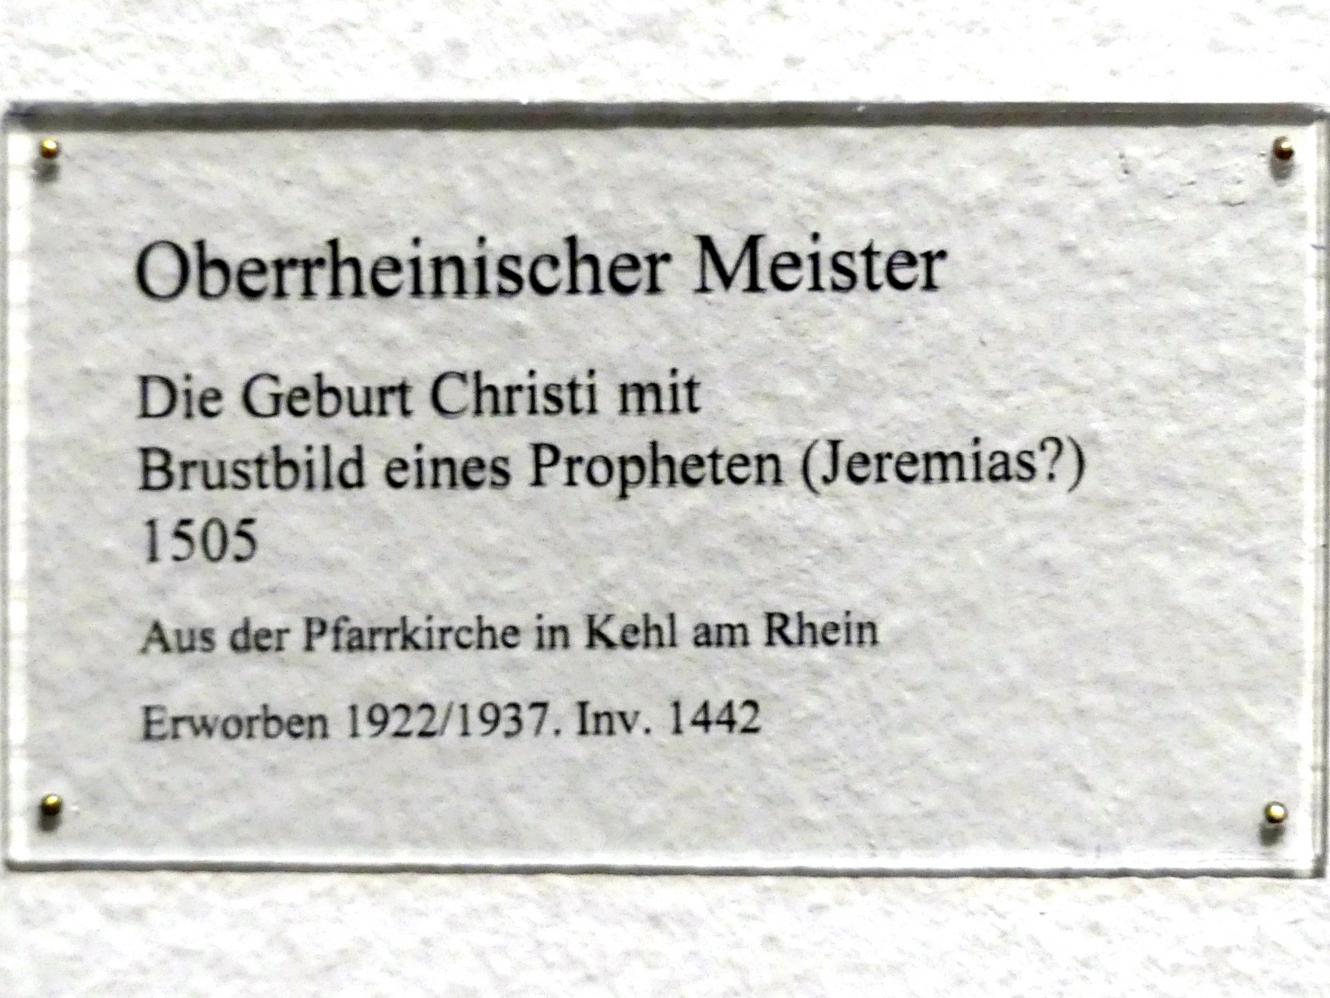 Die Geburt Christi mit Brustbild eines Propheten (Jeremias?), Kehl am Rhein, ehem. Pfarrkirche, jetzt Karlsruhe, Staatliche Kunsthalle, Saal 19, 1505, Bild 3/3